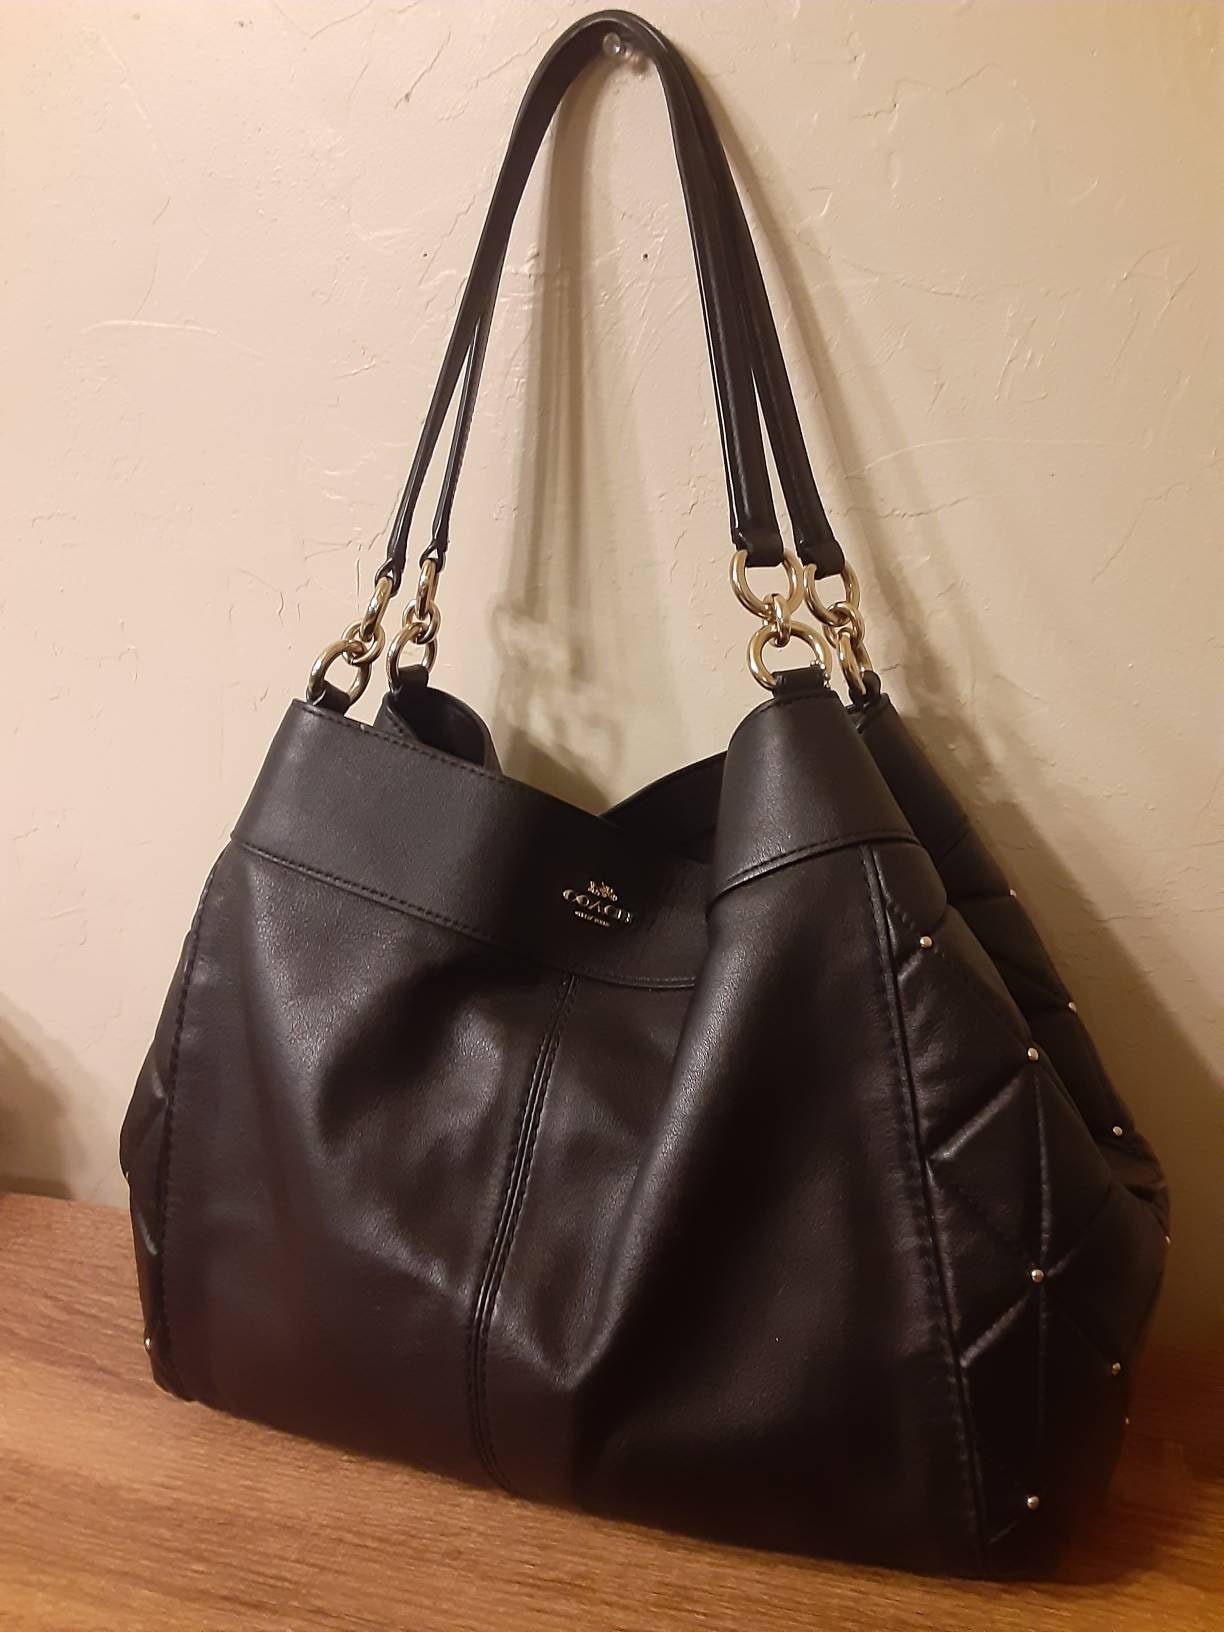 Kate Spade Lexy Pebbled Leather Shoulder Bag - Black